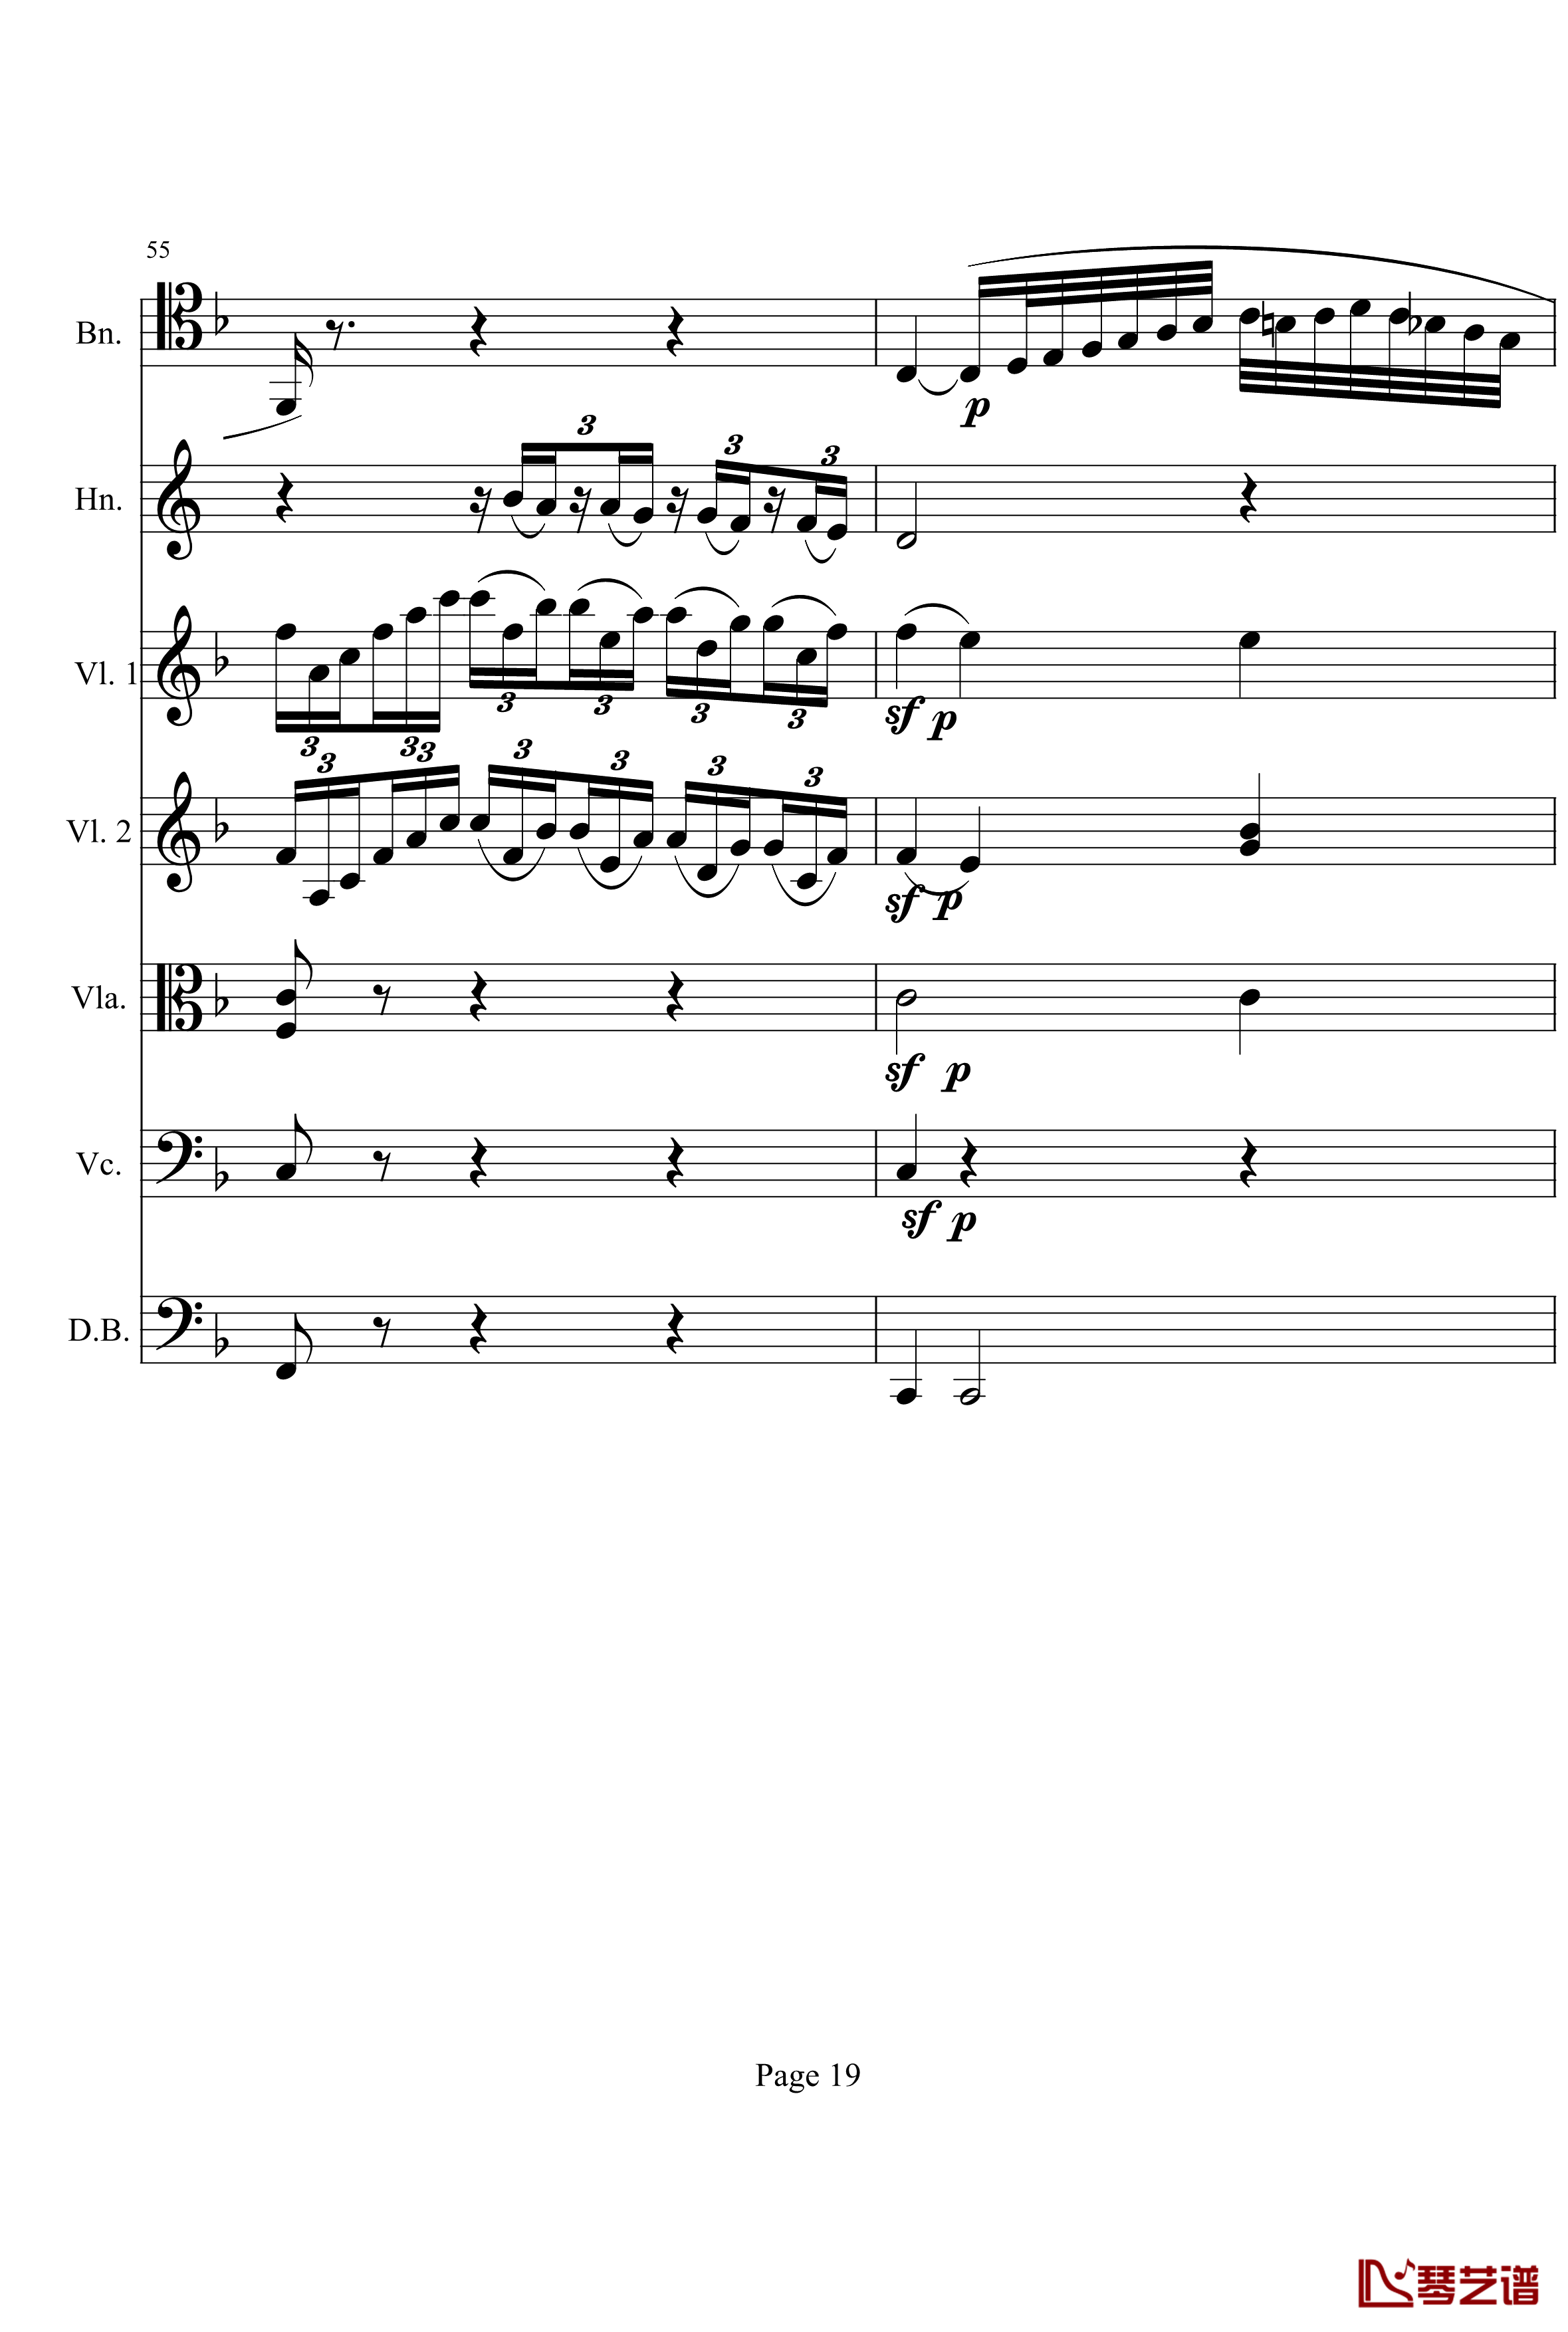 奏鸣曲之交响钢琴谱-第1首-Ⅱ-贝多芬-beethoven19